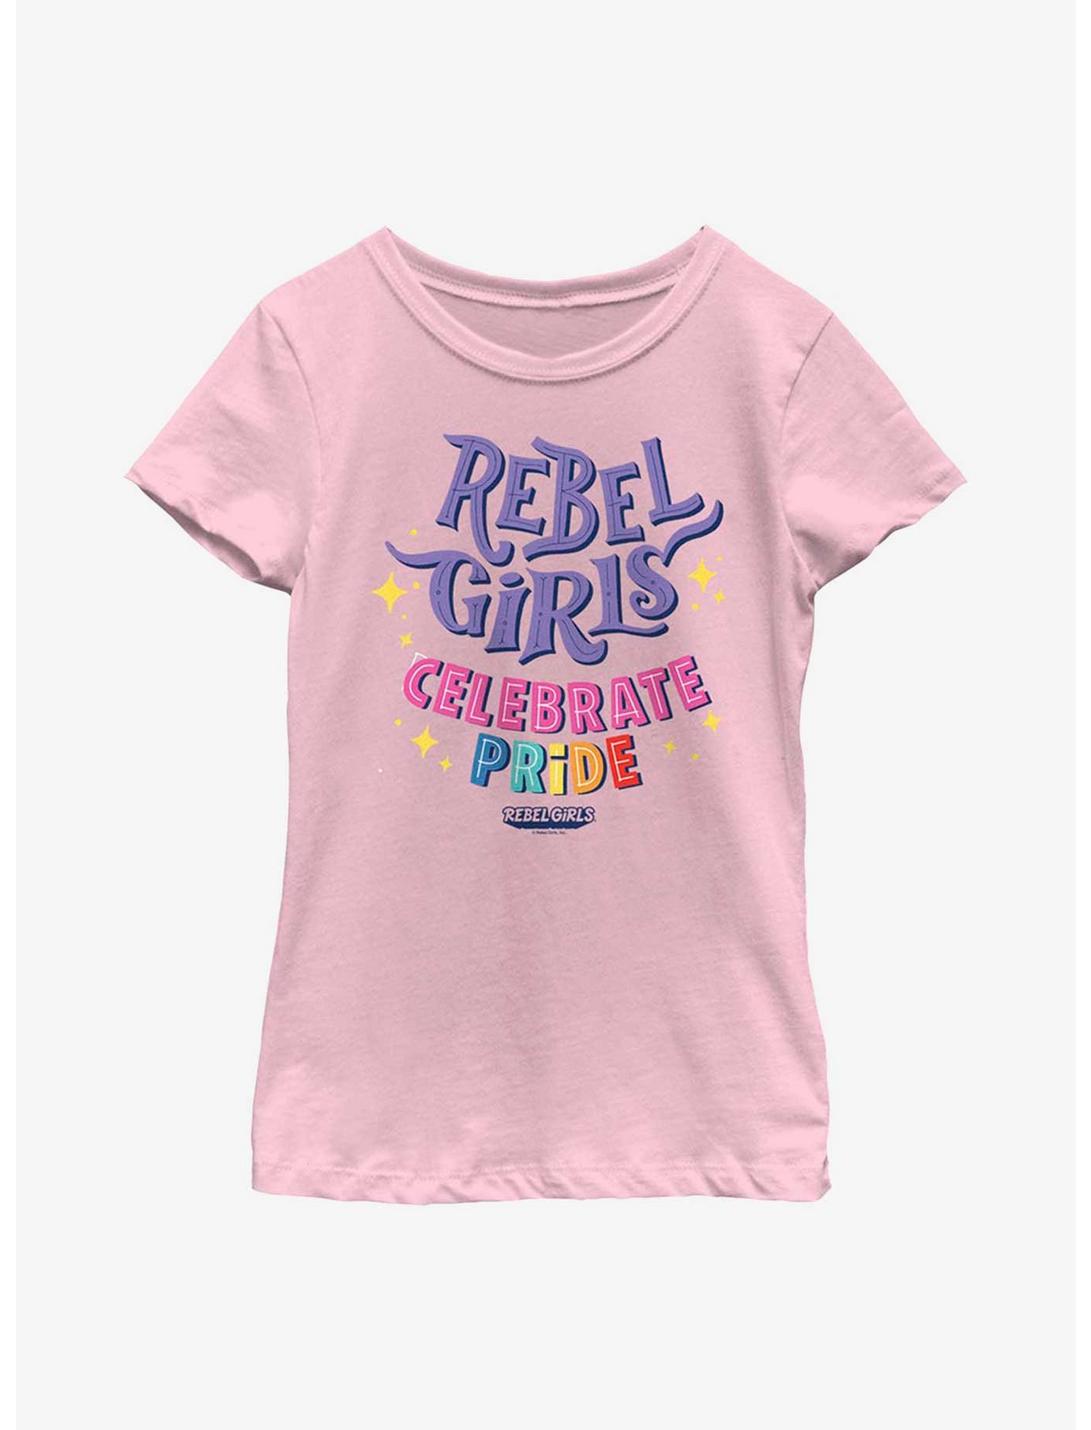 Rebel Girls Celebrate Pride Youth Girls T-Shirt, PINK, hi-res